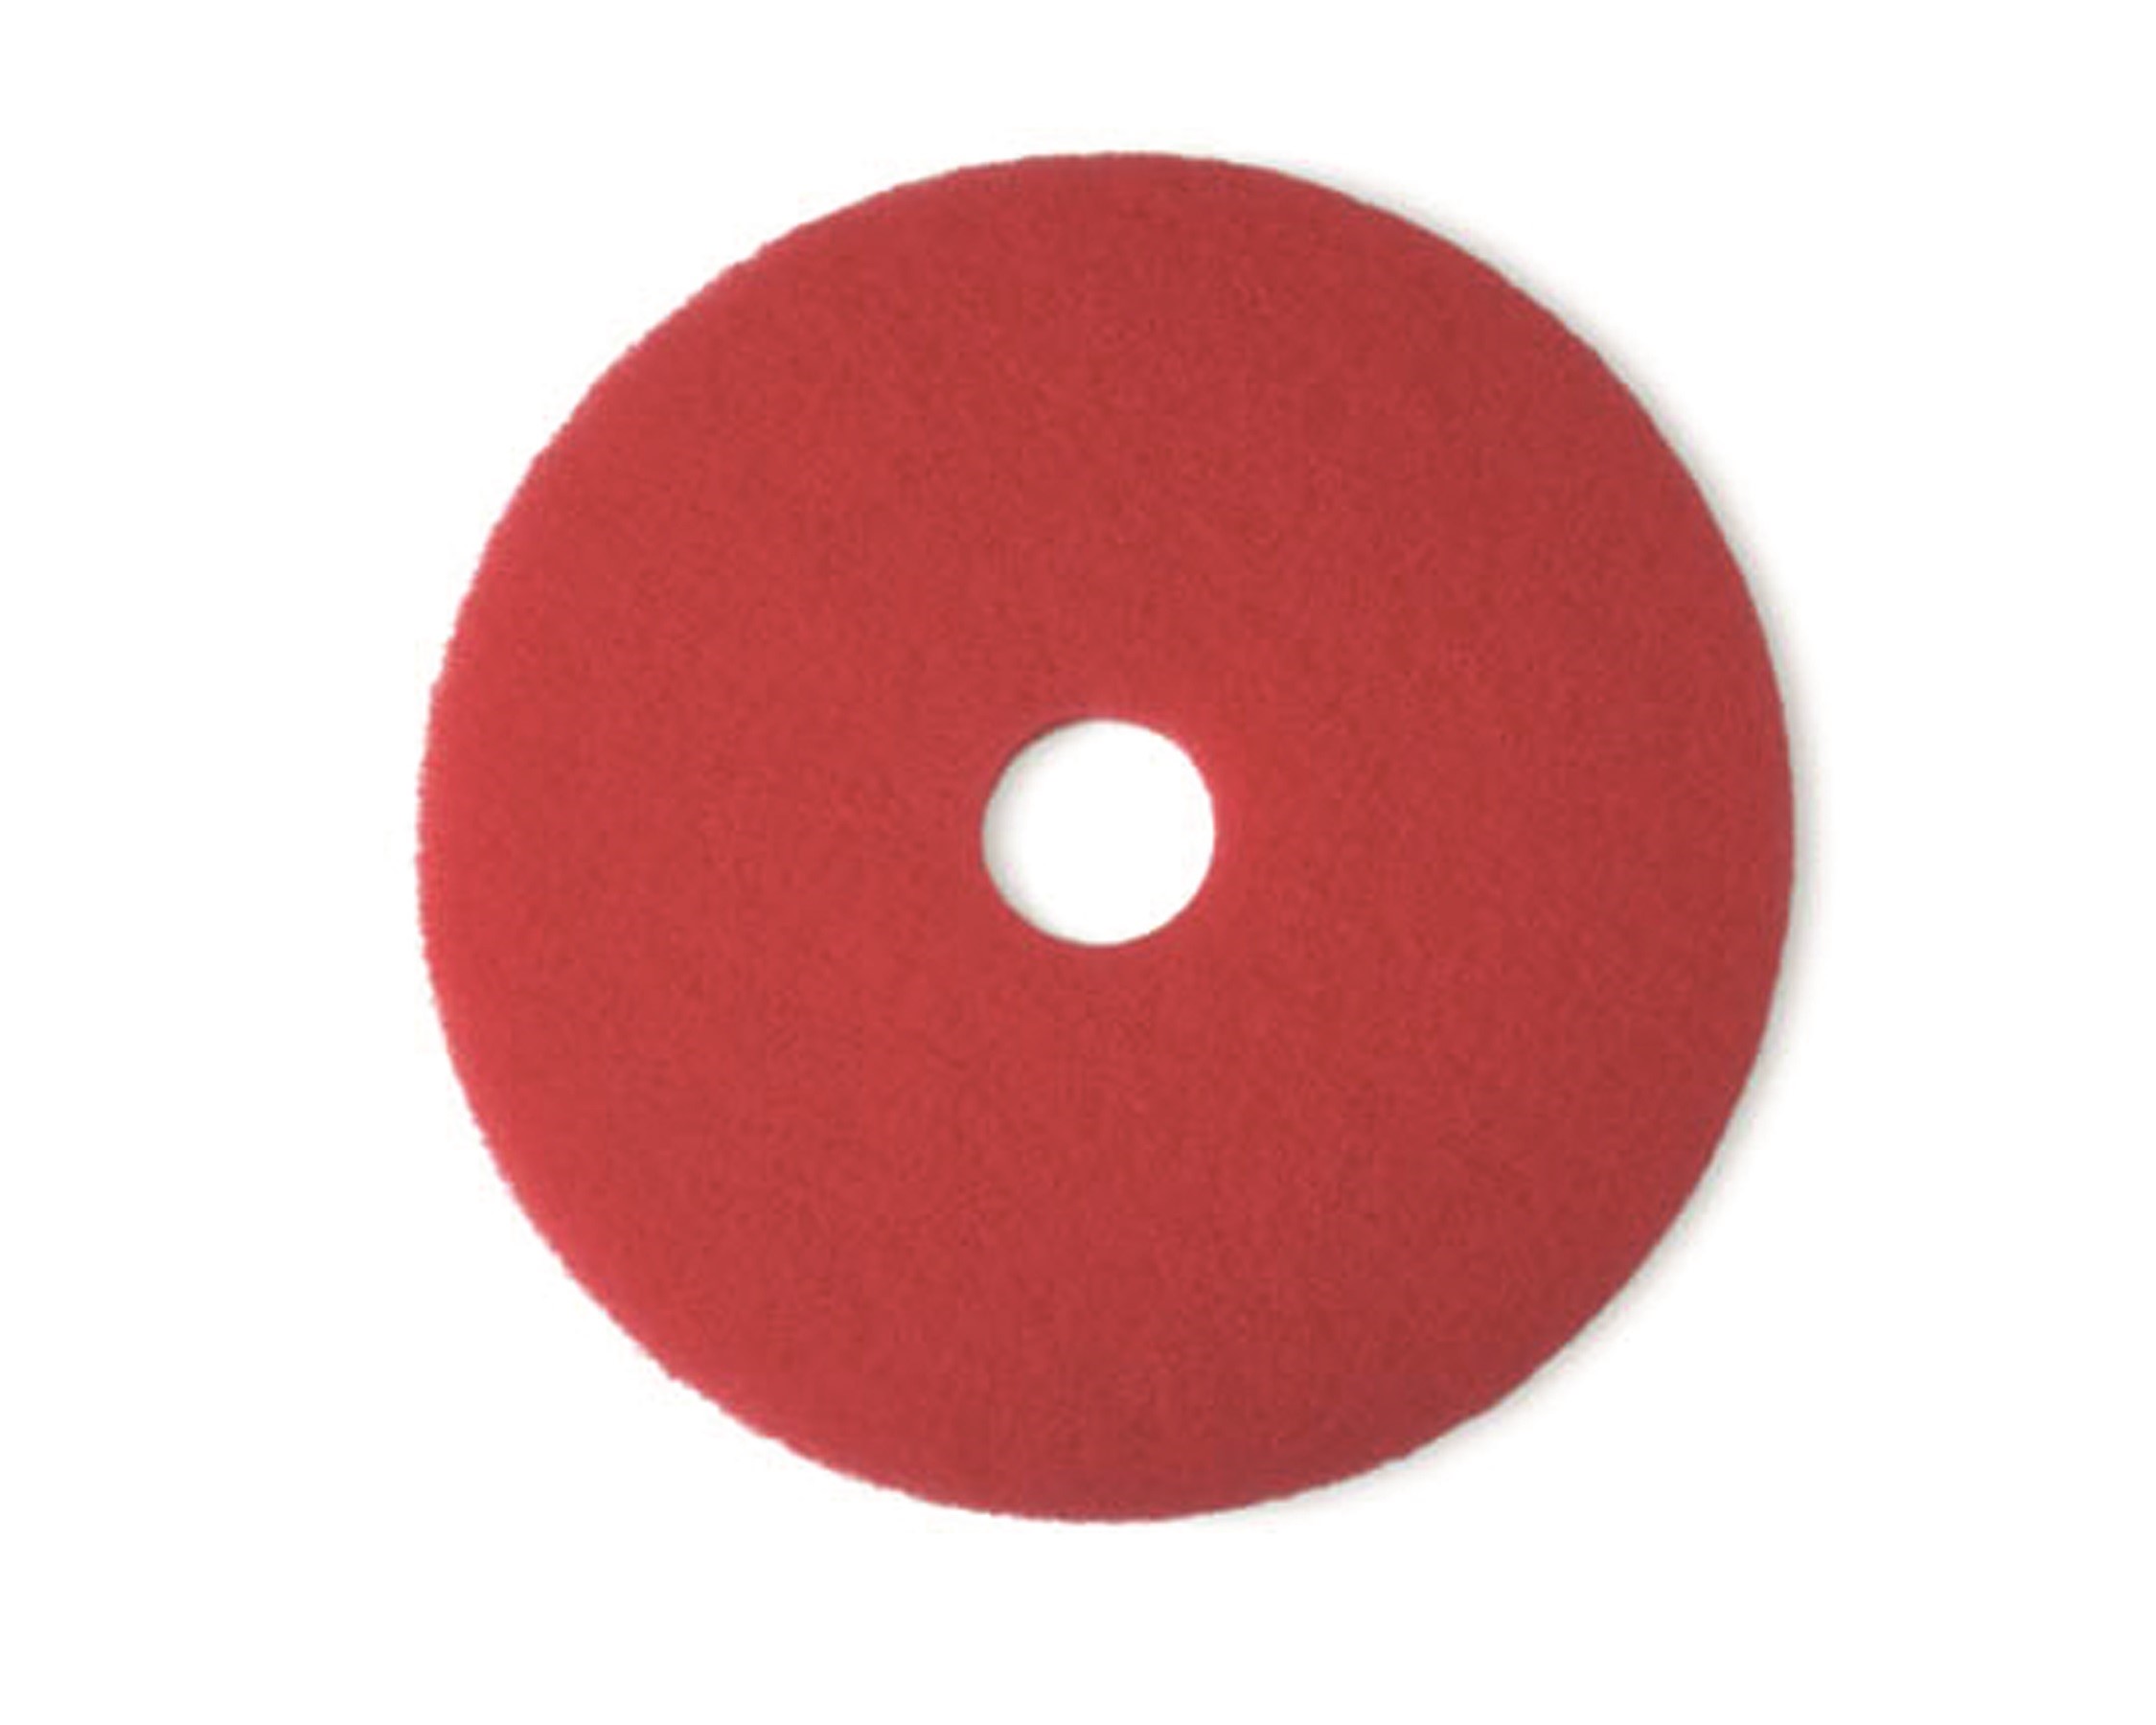 Scotch-Brite™ Red Buffer Pad 5100, Red, 508 mm x 356 mm, 20 in x